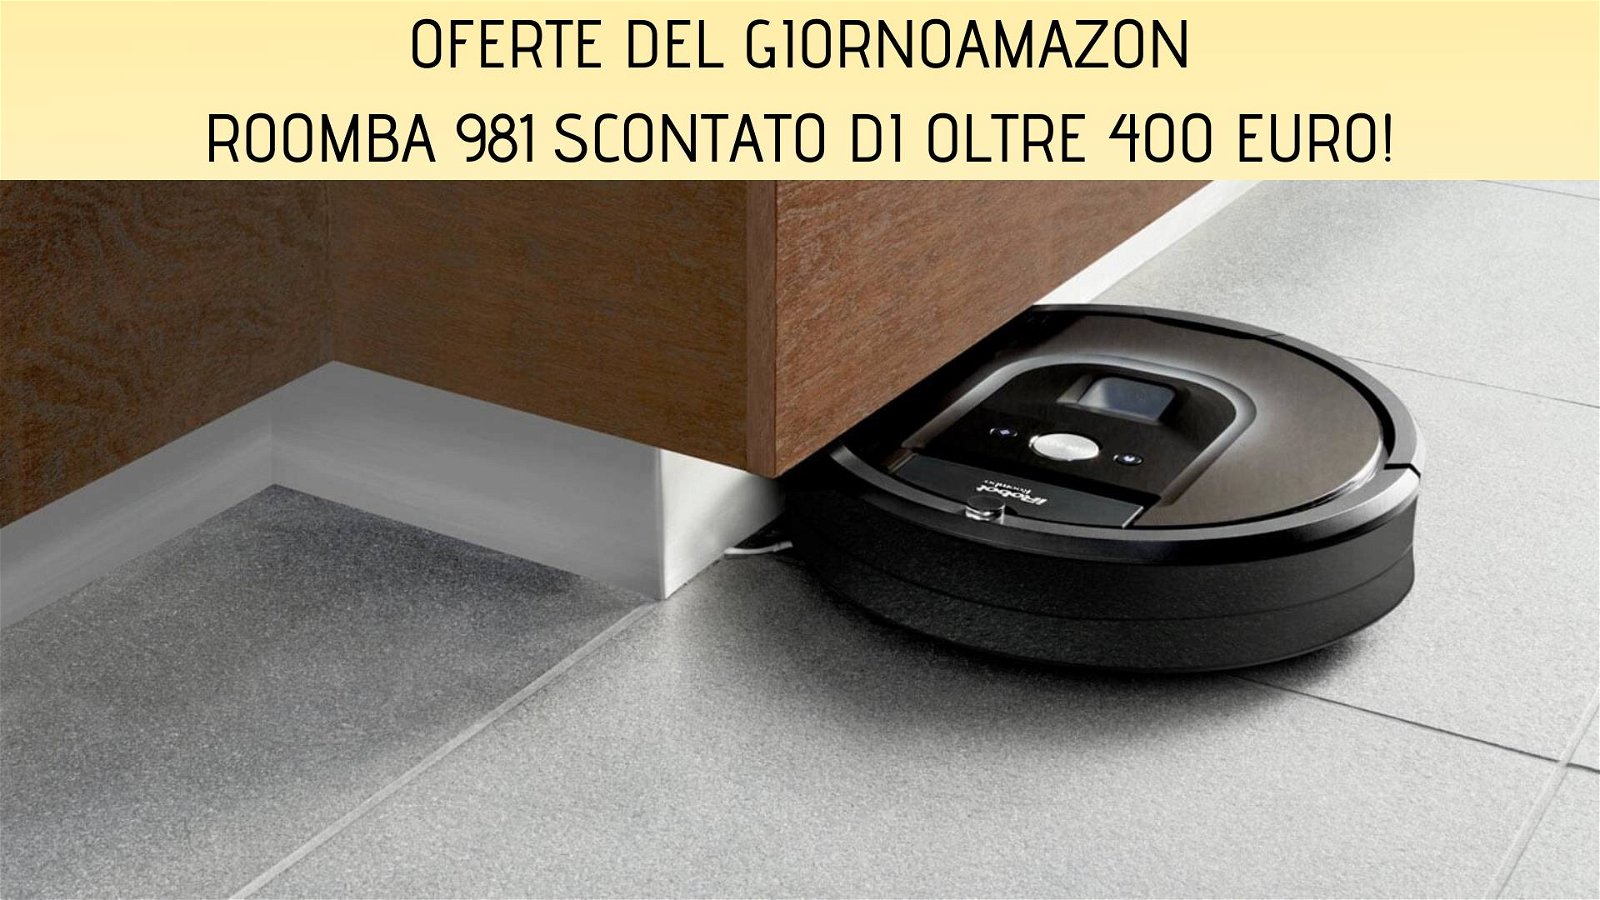 Immagine di Offerte del giorno Amazon: iRobot Roomba 981 ad un prezzo eccezionale!